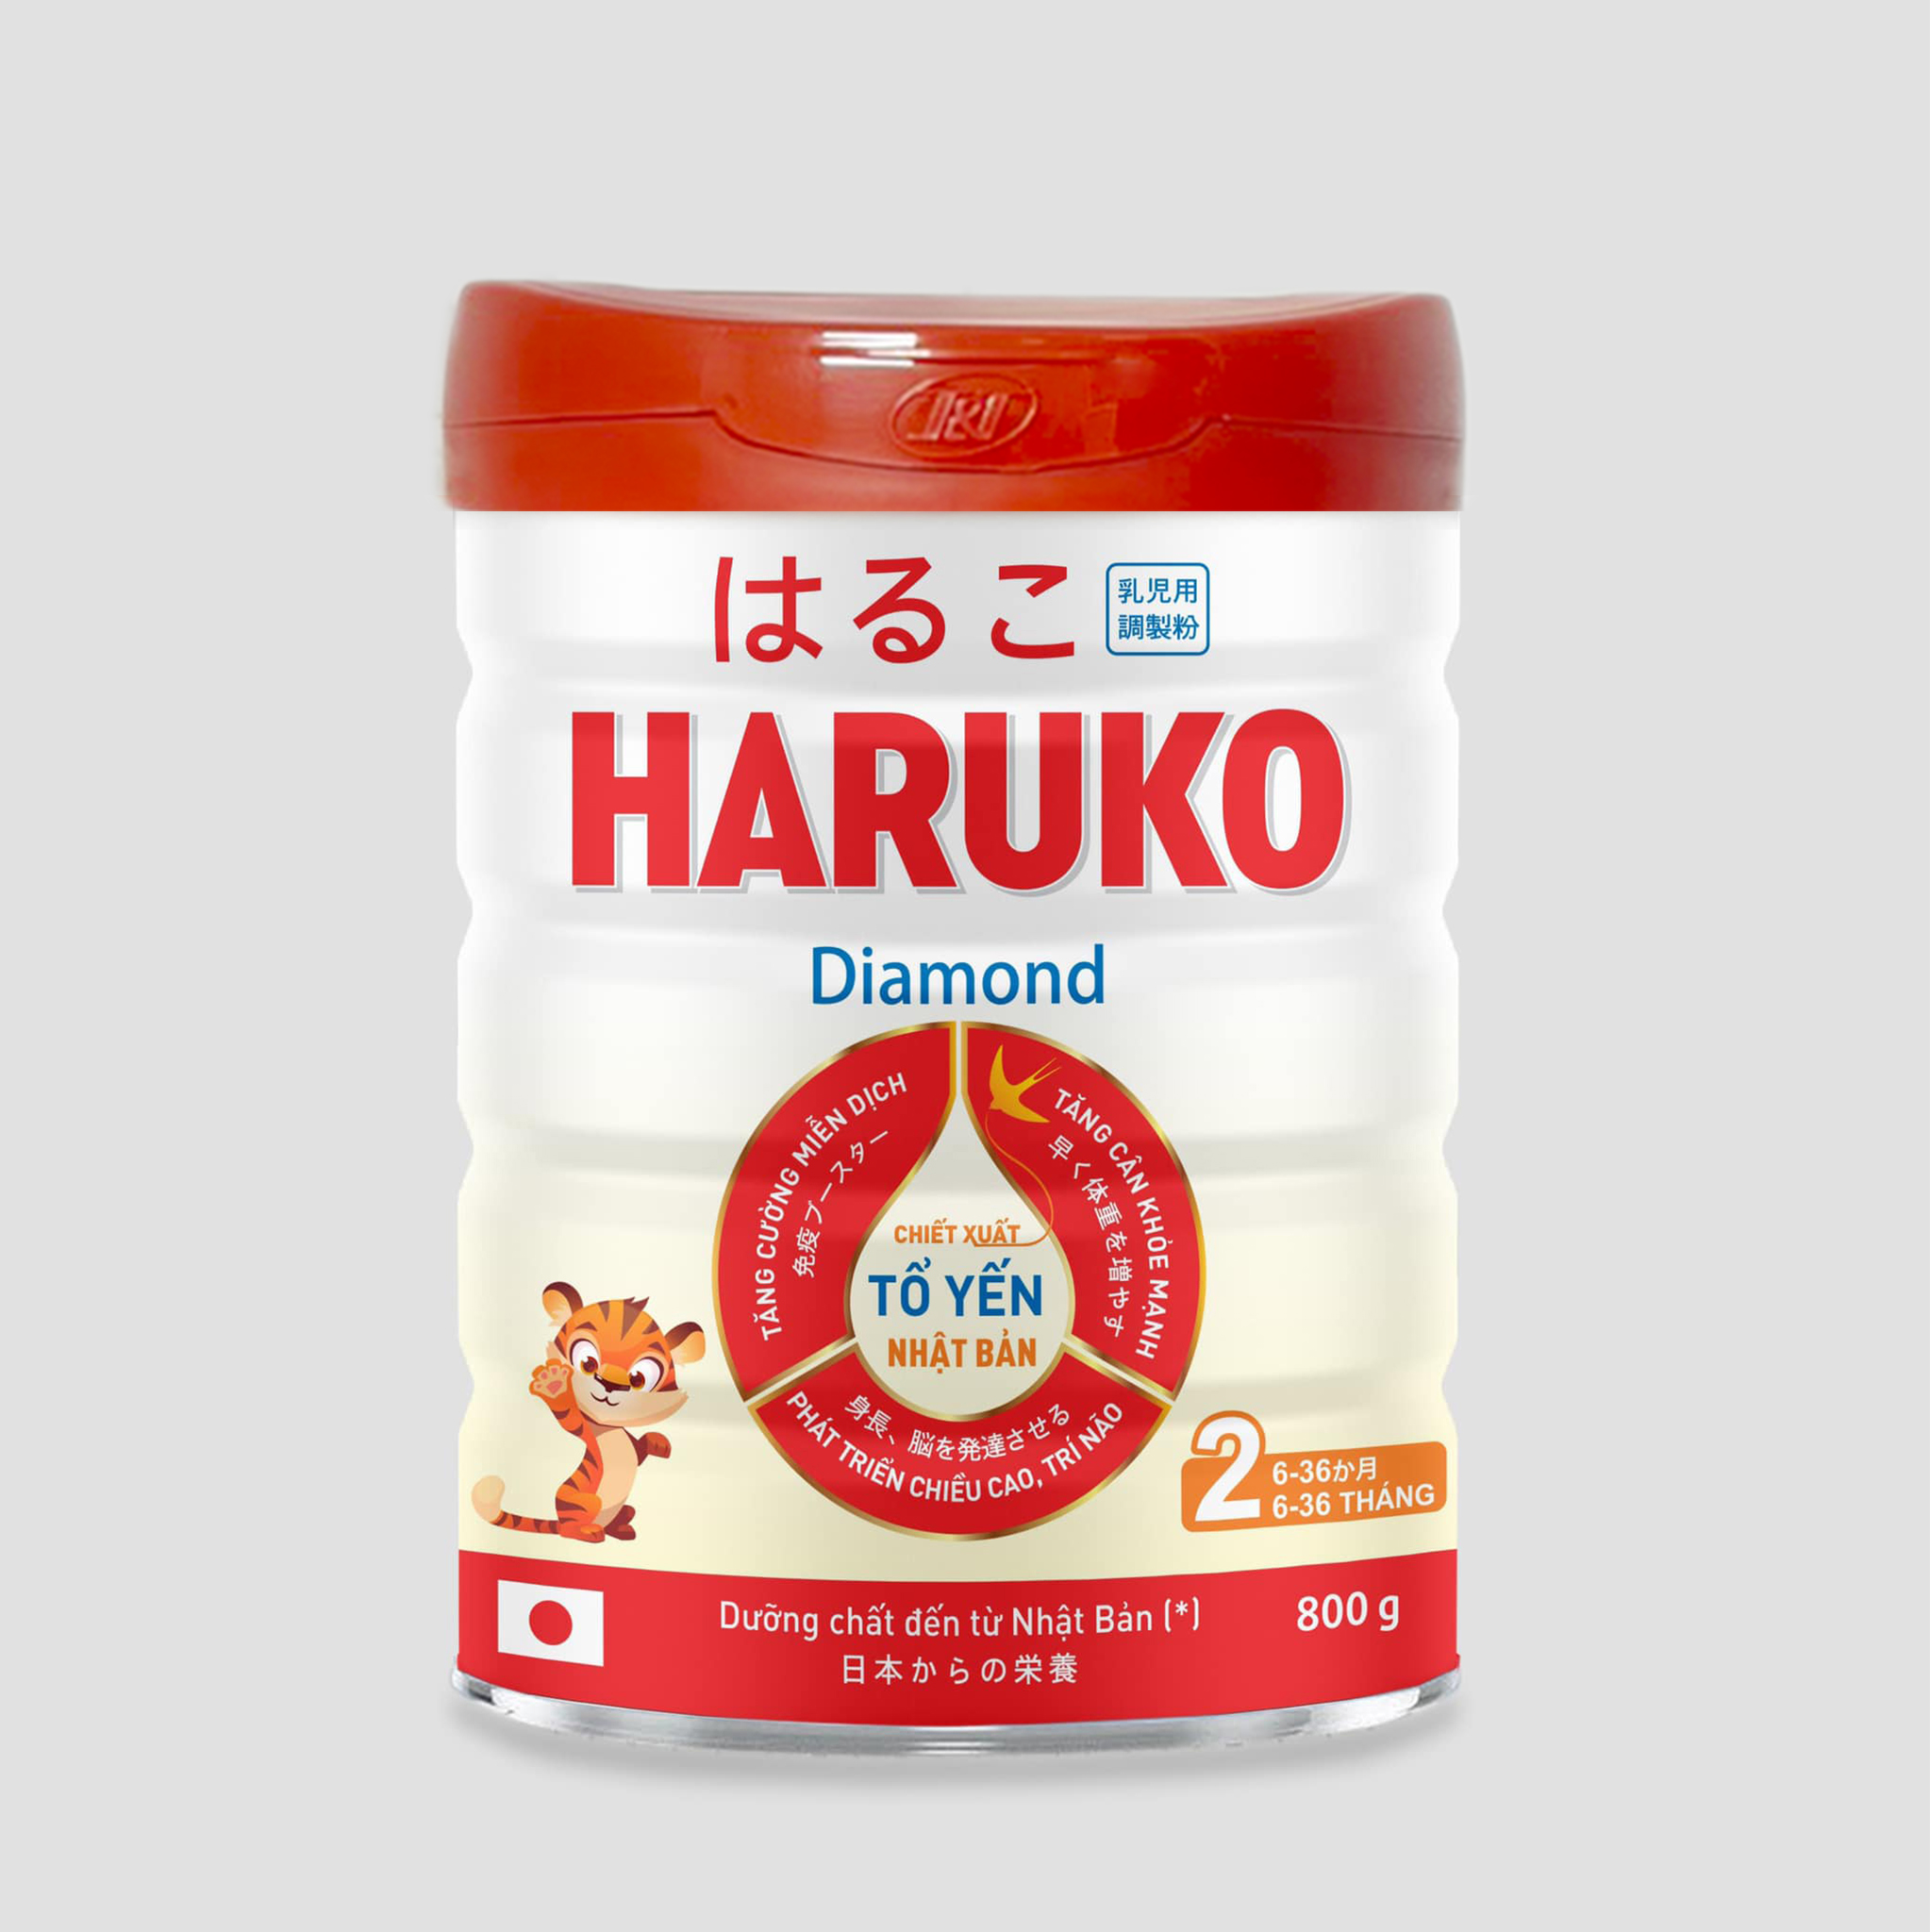 Haruko Diamond